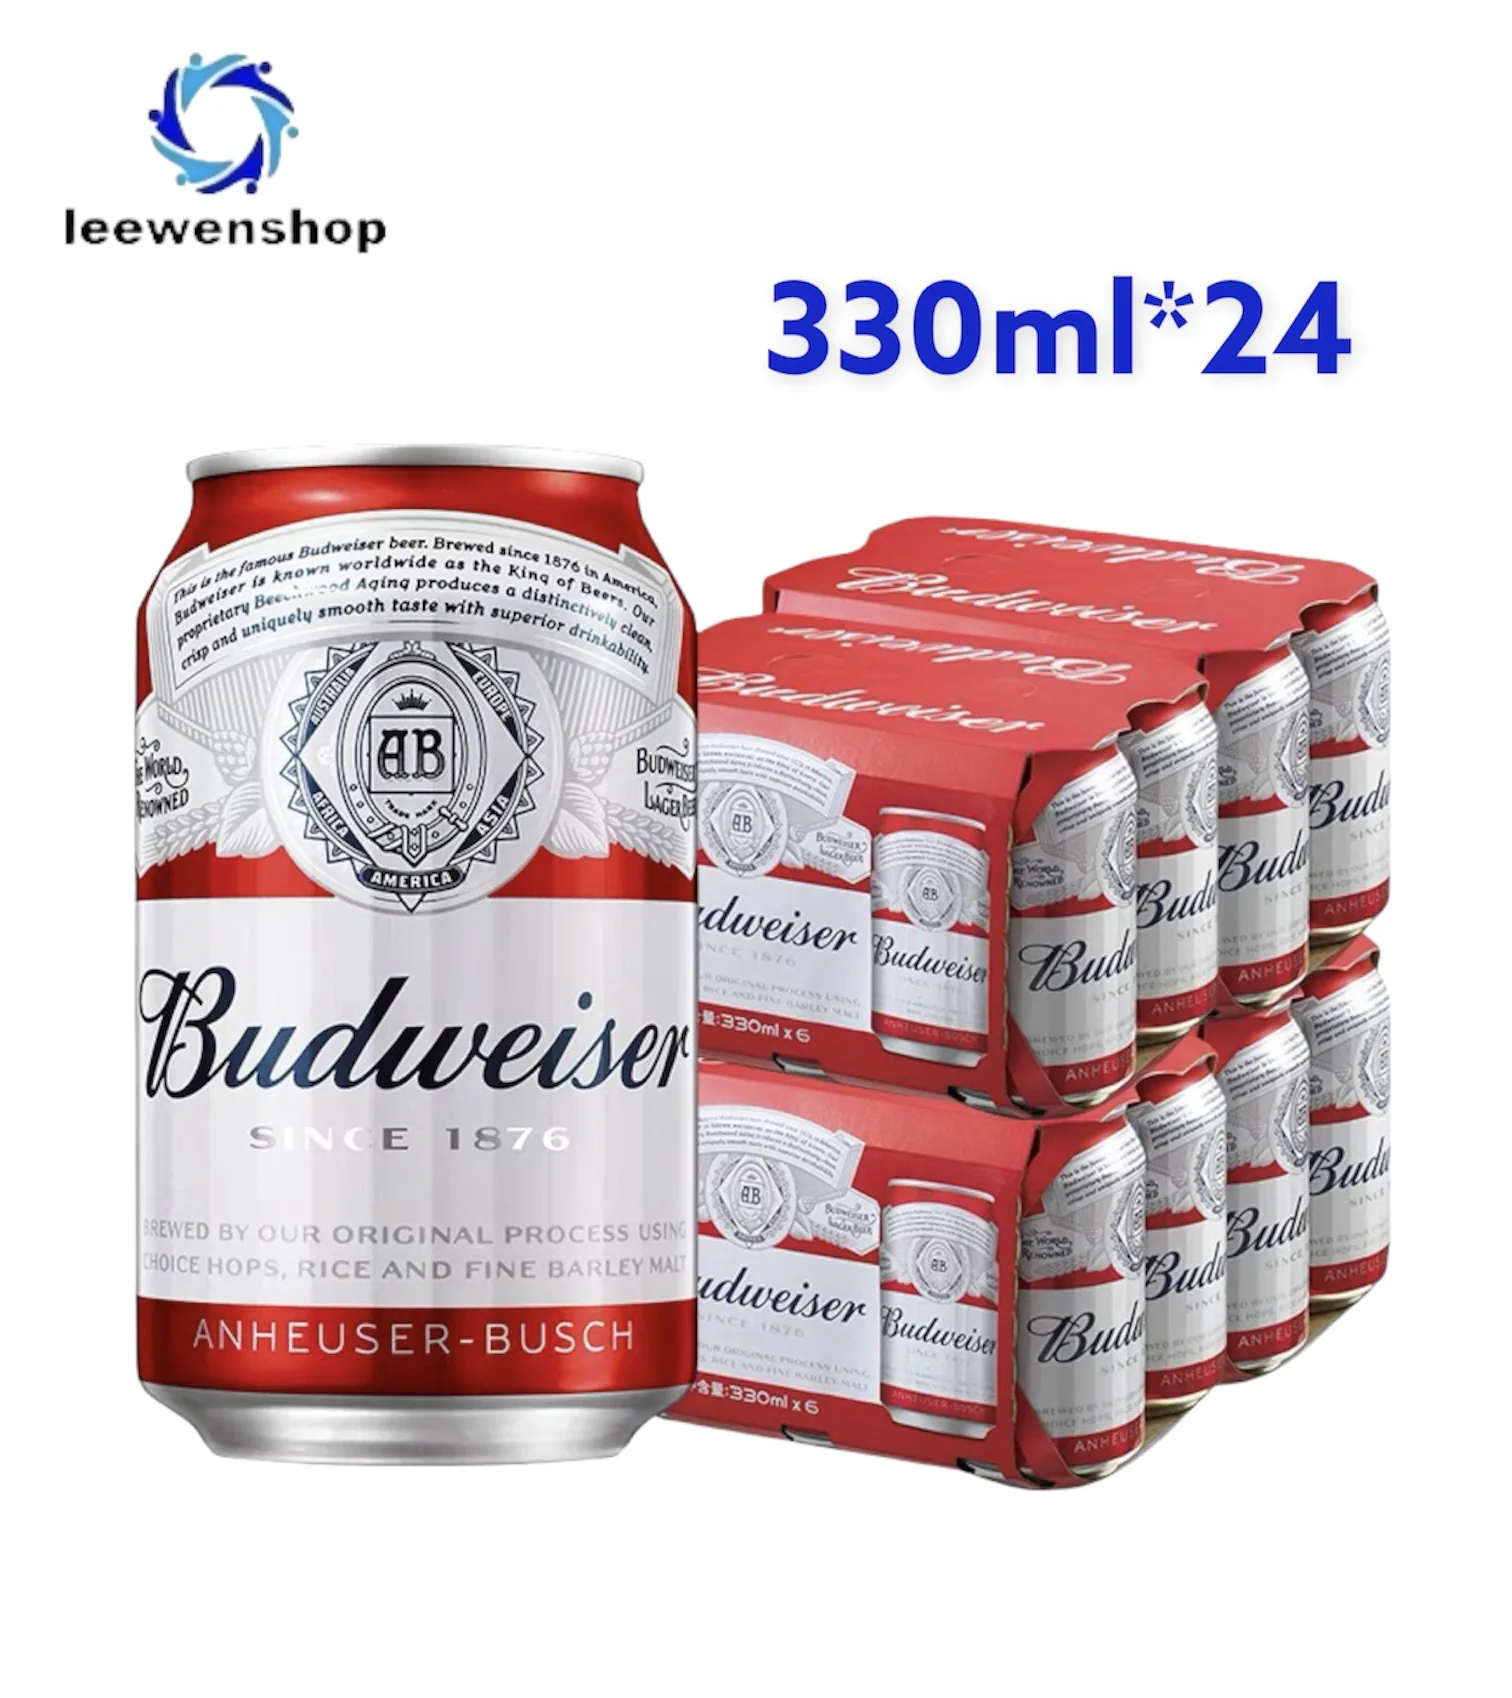 Budweiser Anheuser Busch Beer 330ml 1 * 24 can